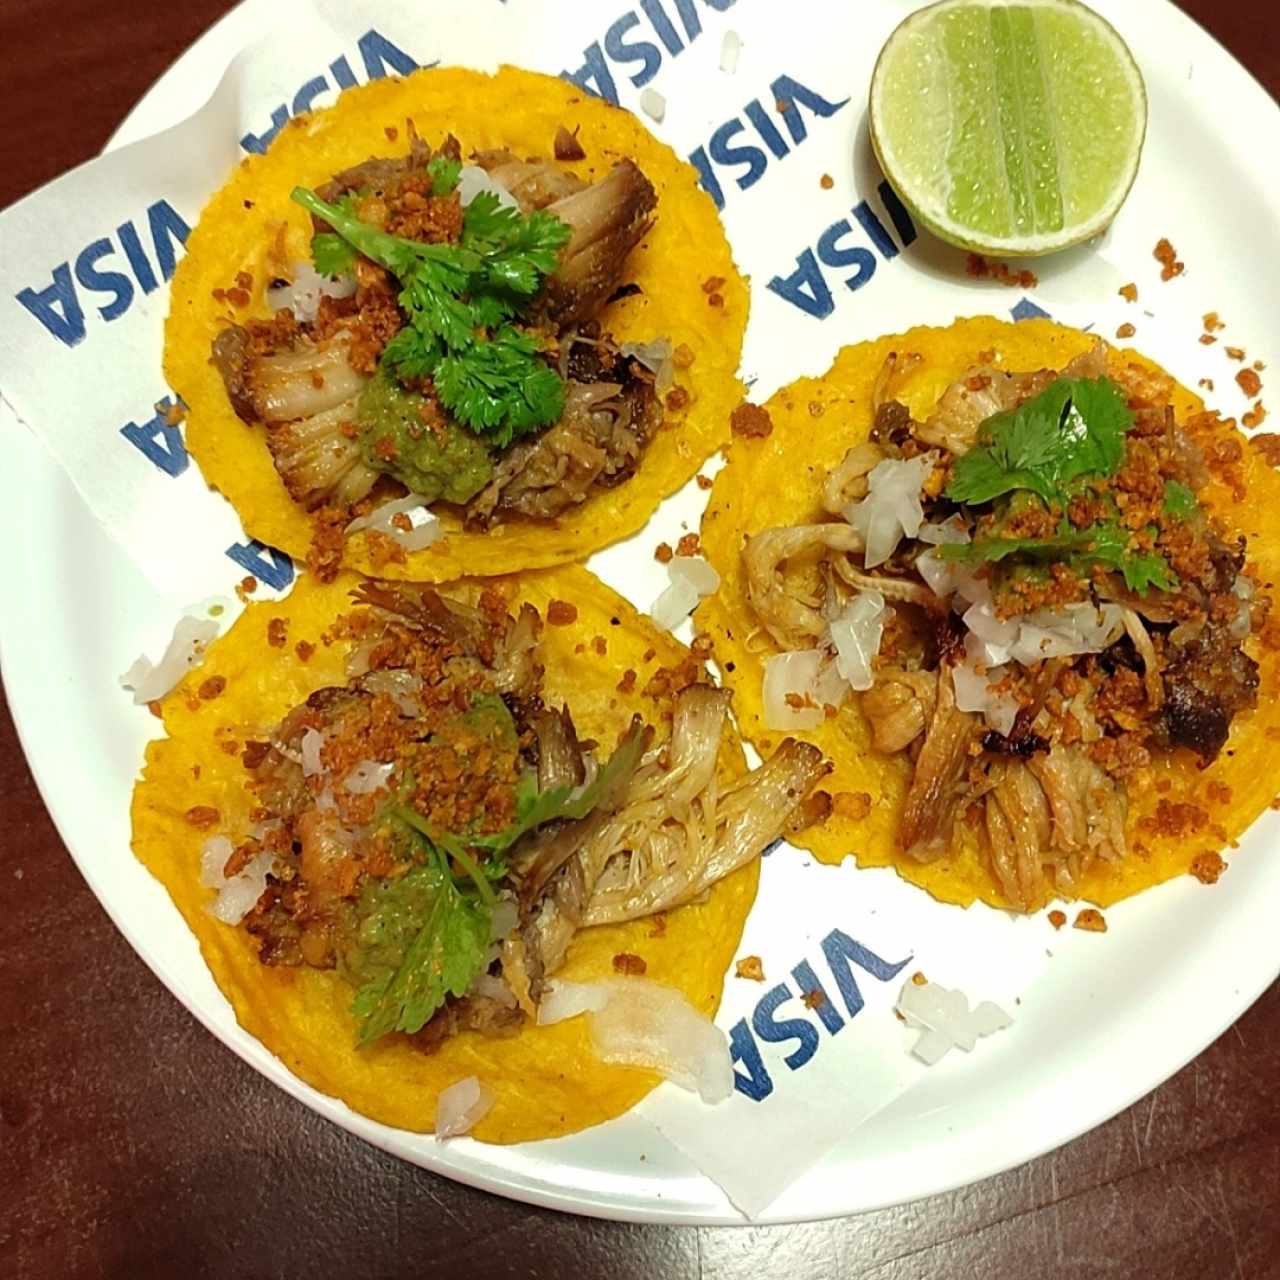 Tacostilla